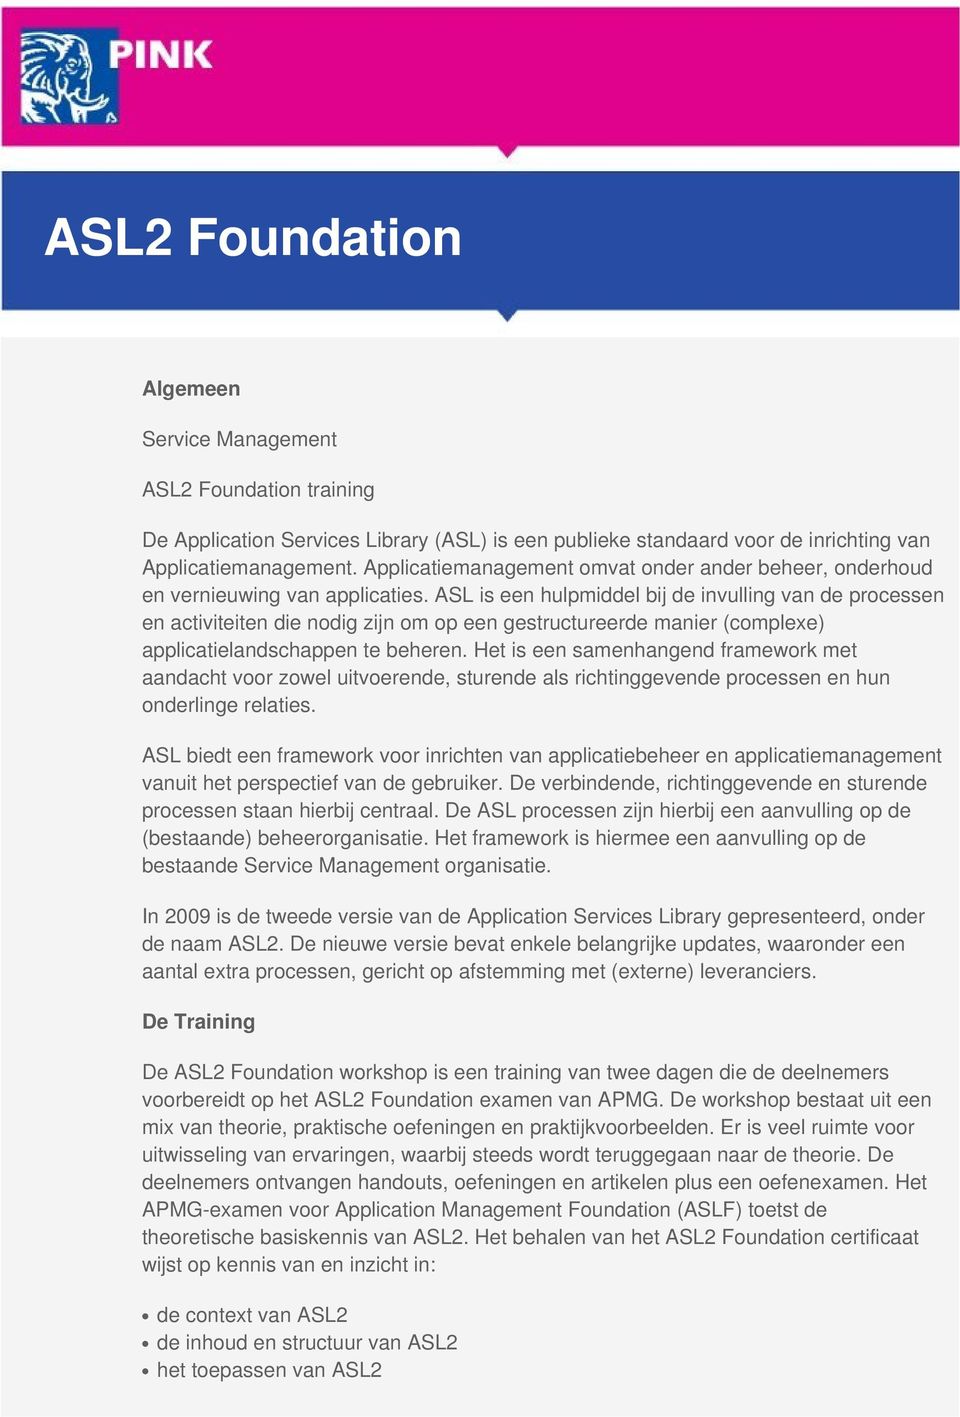 ASL is een hulpmiddel bij de invulling van de processen en activiteiten die nodig zijn om op een gestructureerde manier (complexe) applicatielandschappen te beheren.